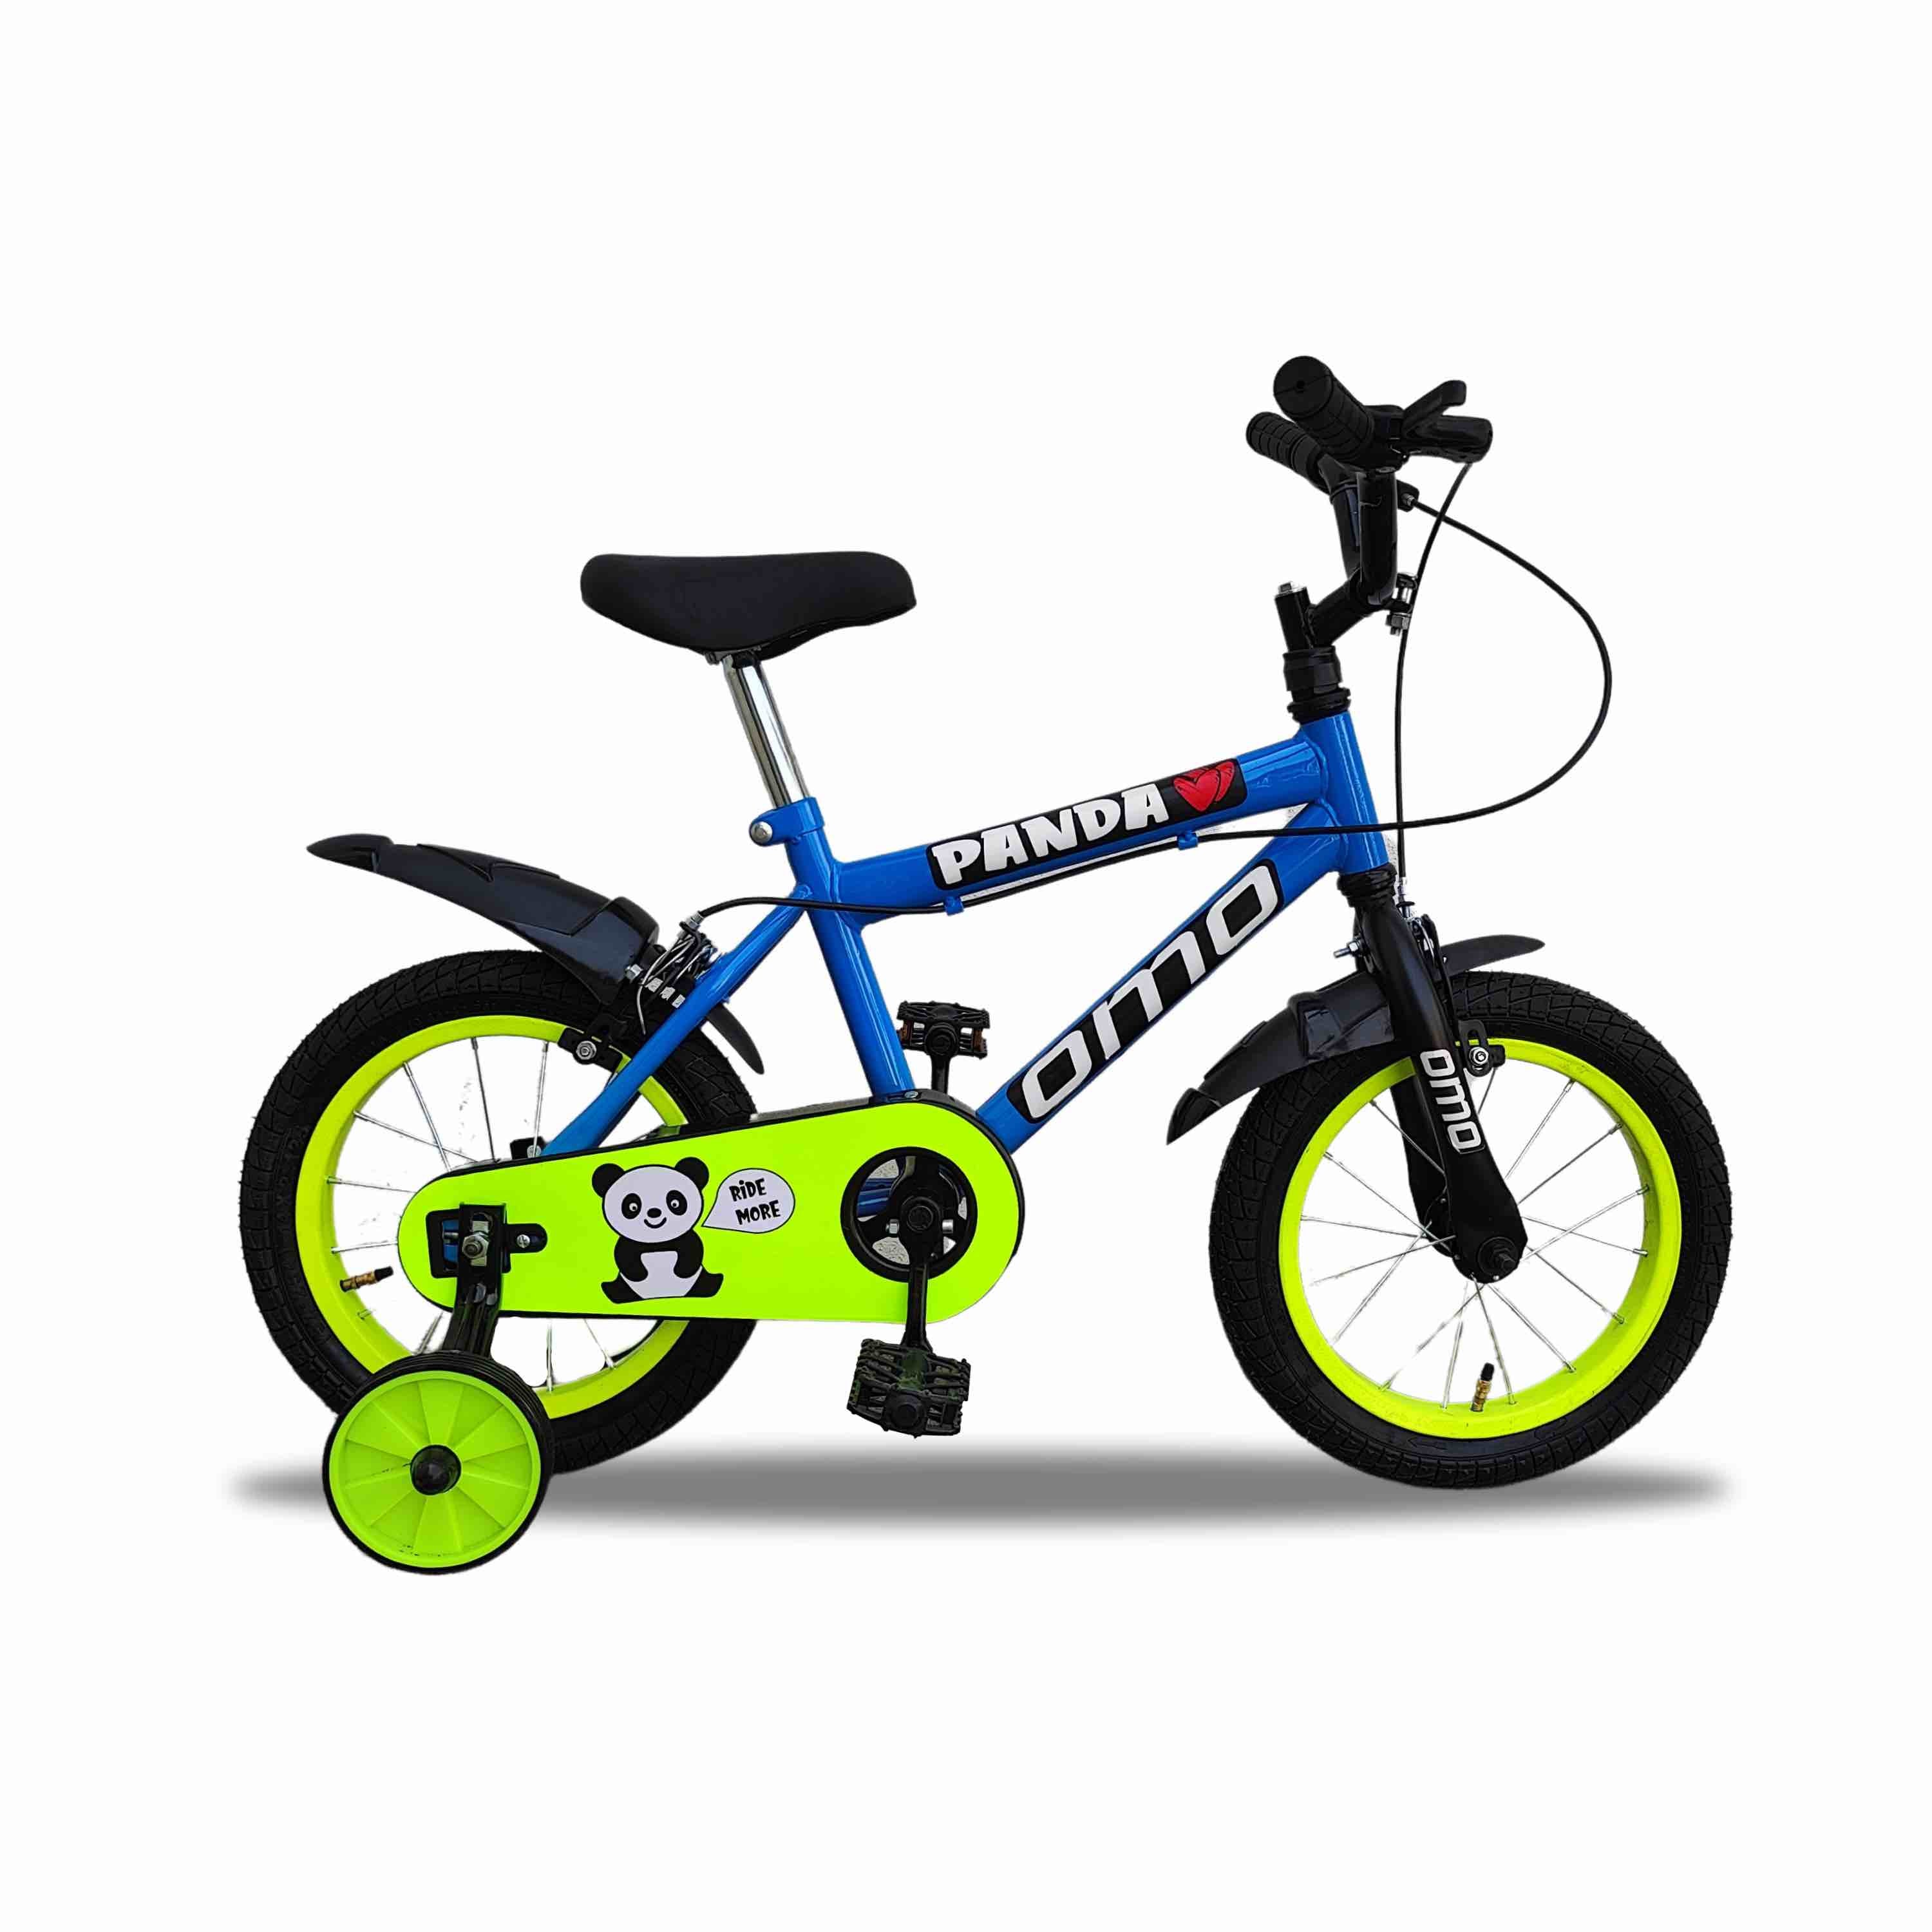 Panda 20T Kids Bike (5 To Years) craft-ivf